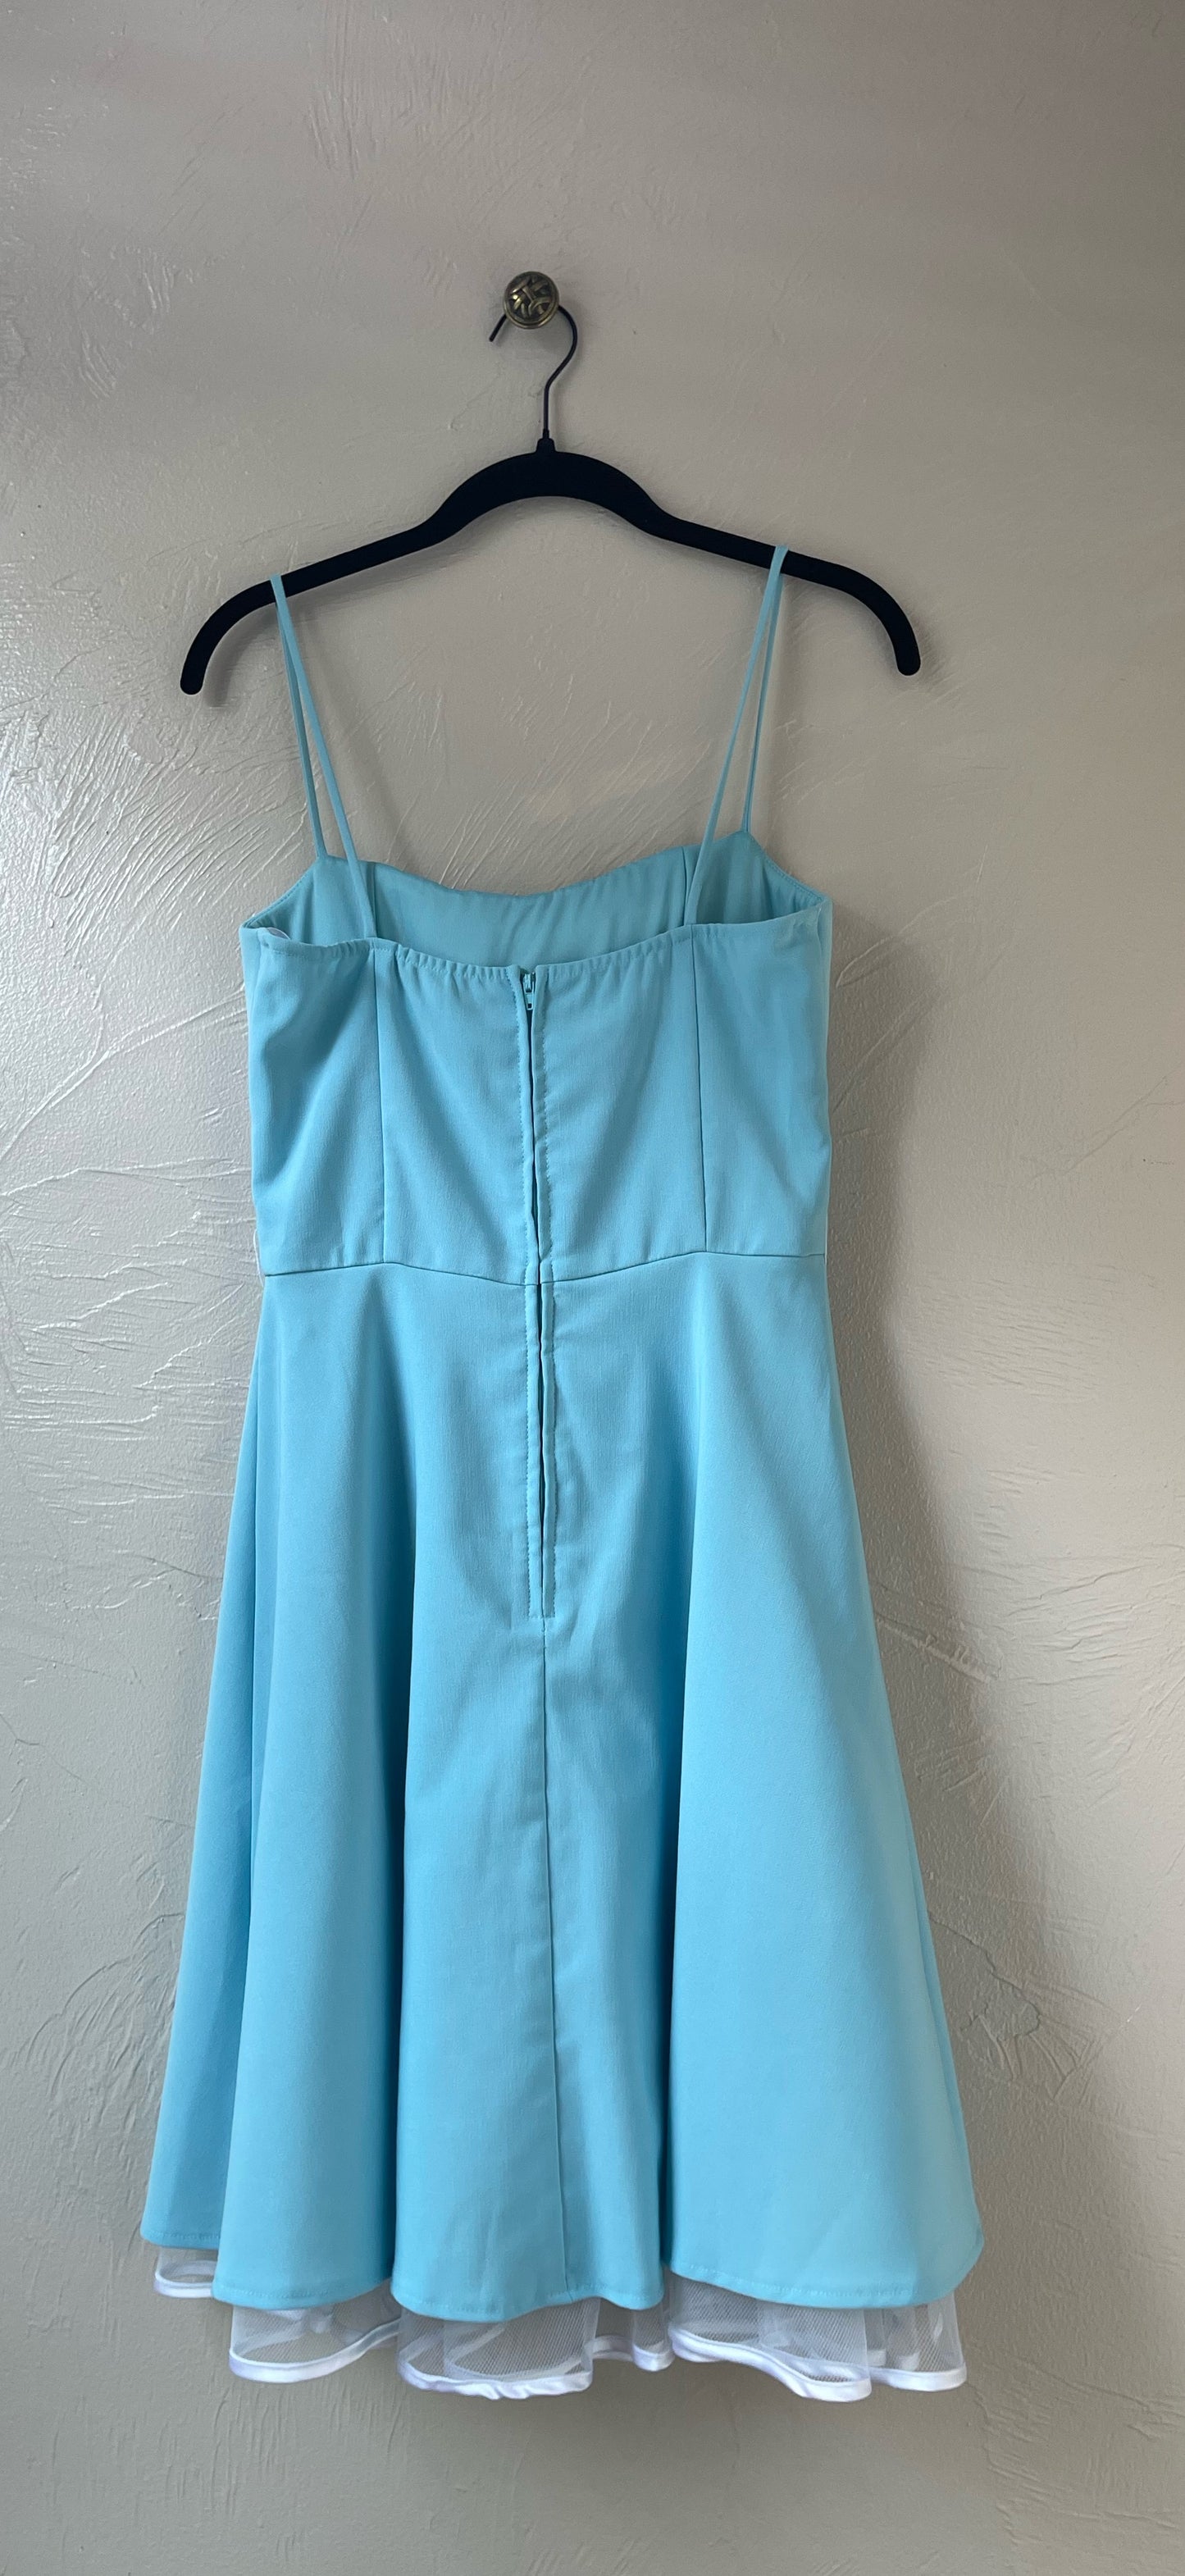 Adorable Tulle Underskirt Blue Dress